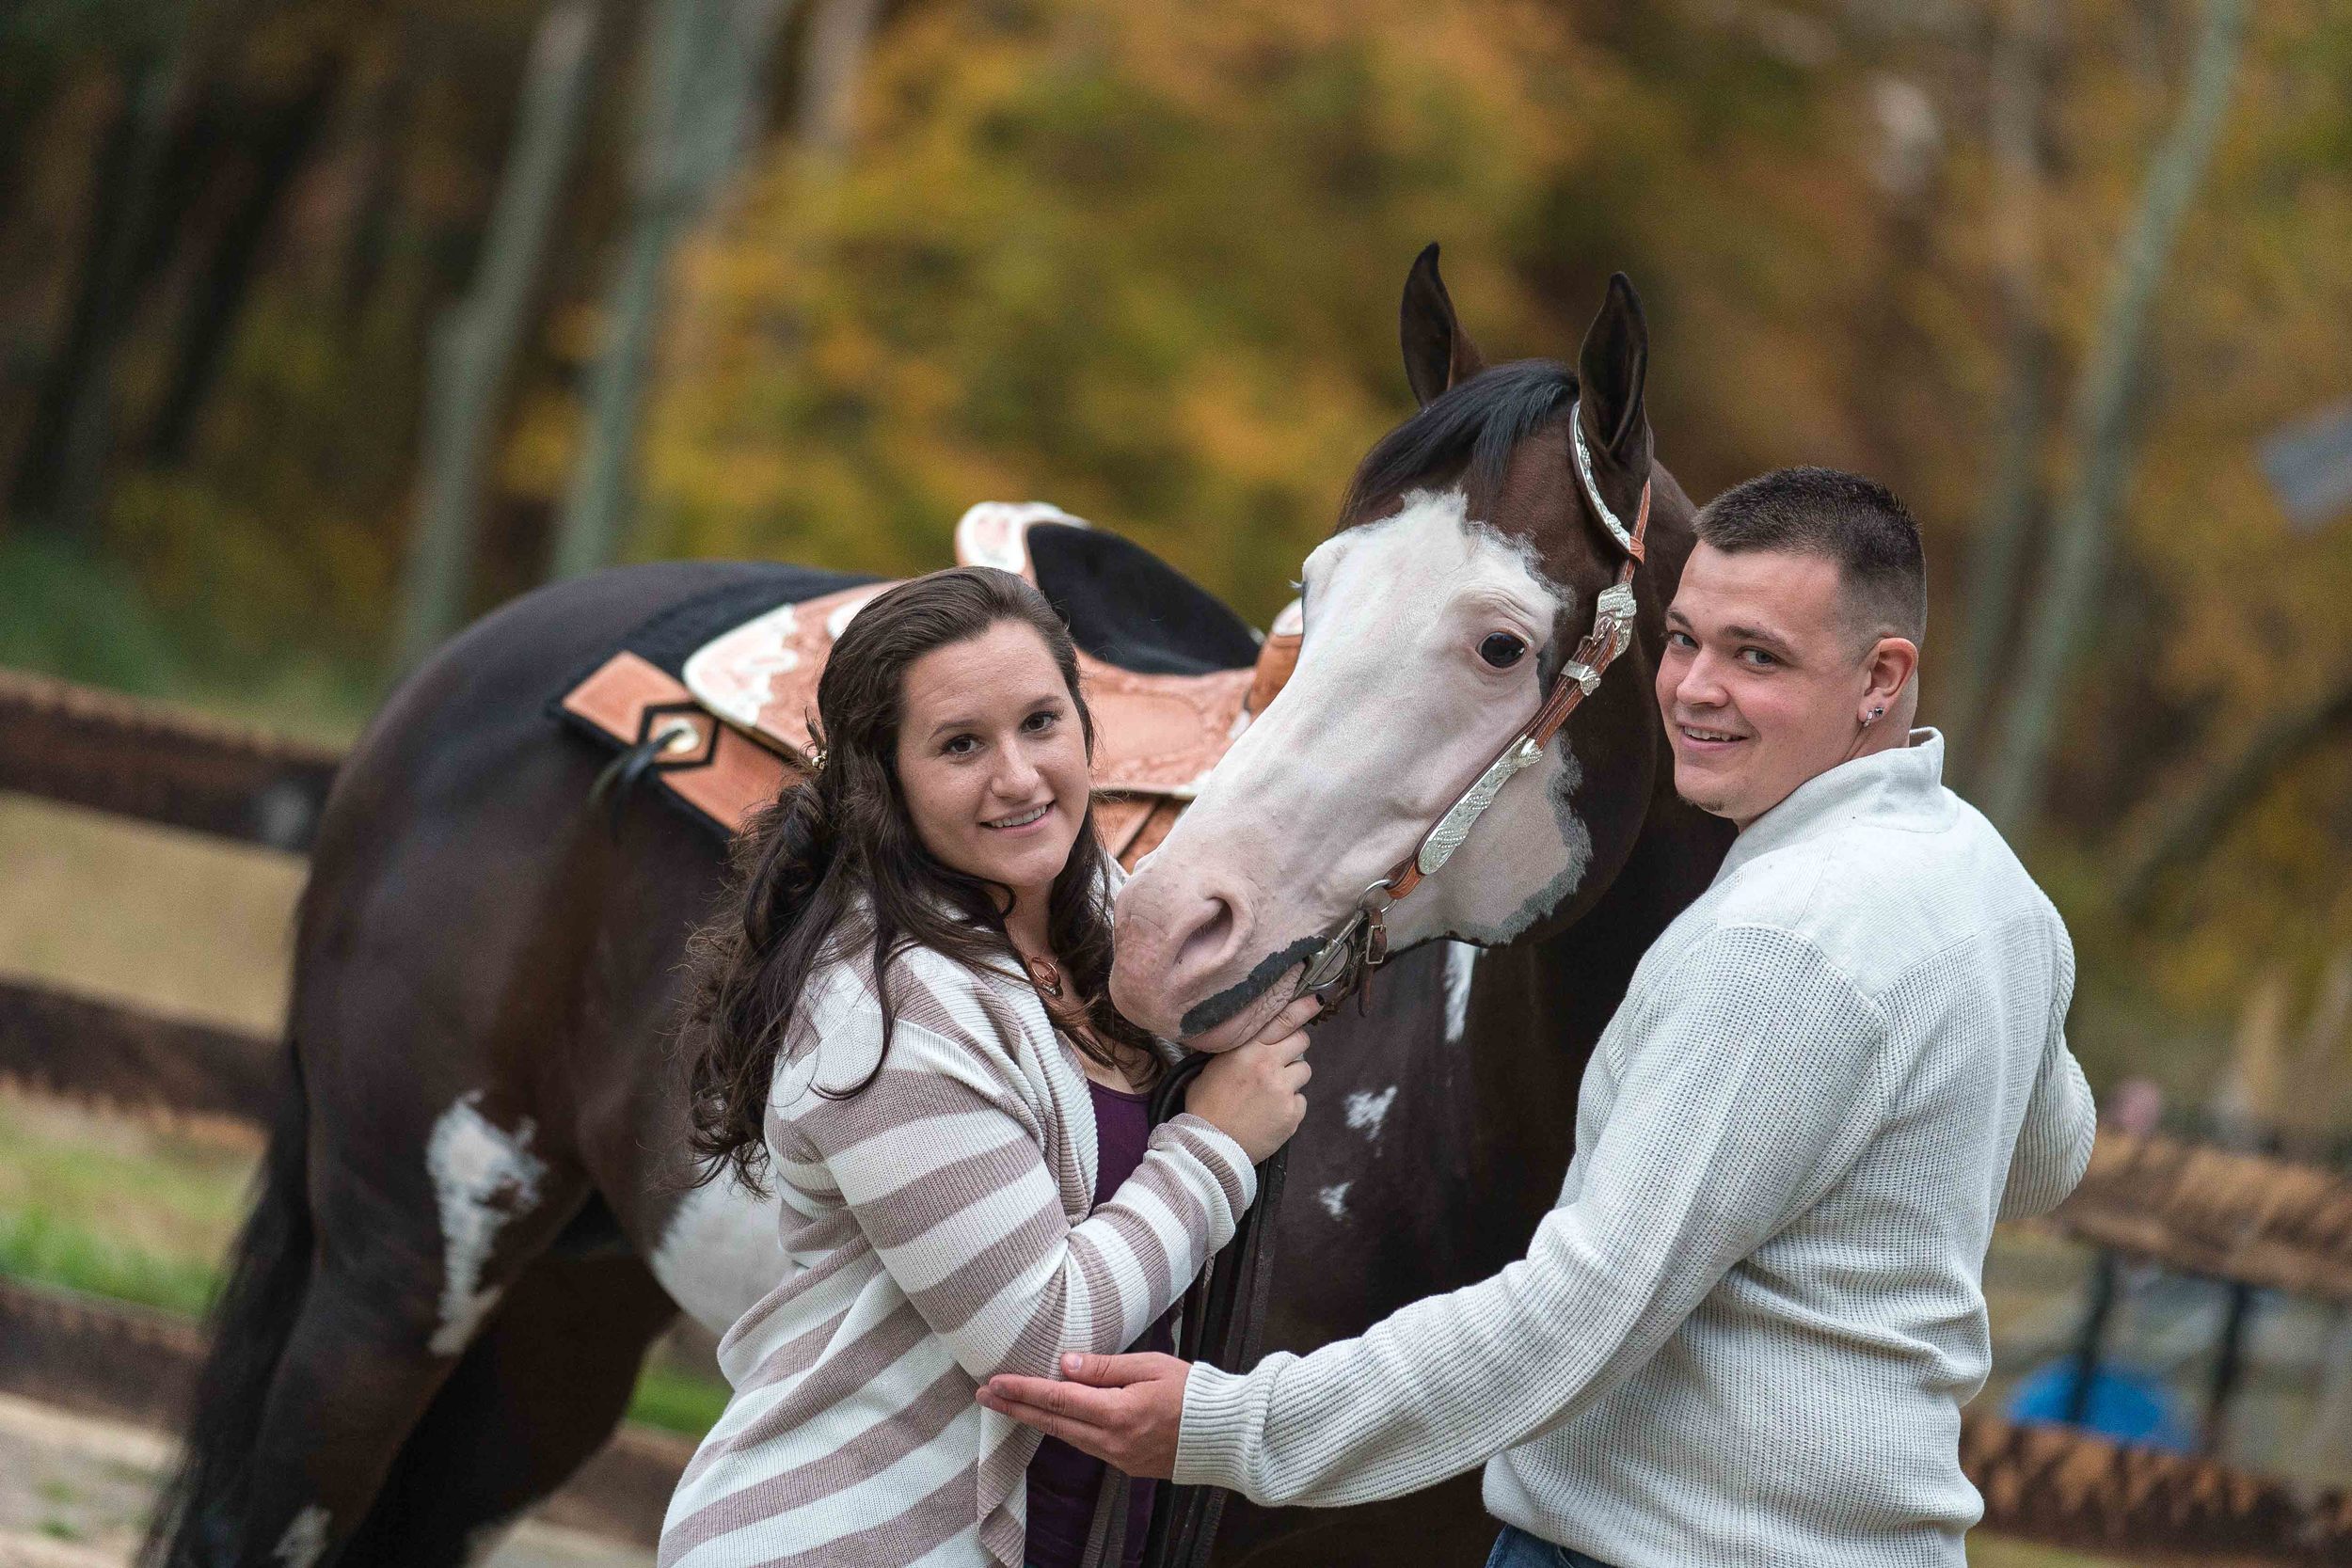 Horses-Engagement-Photography-by-Jacek-Dolata-CT-MA-RI-NJ-NYC-NY-VT-NH-PA-5.jpg